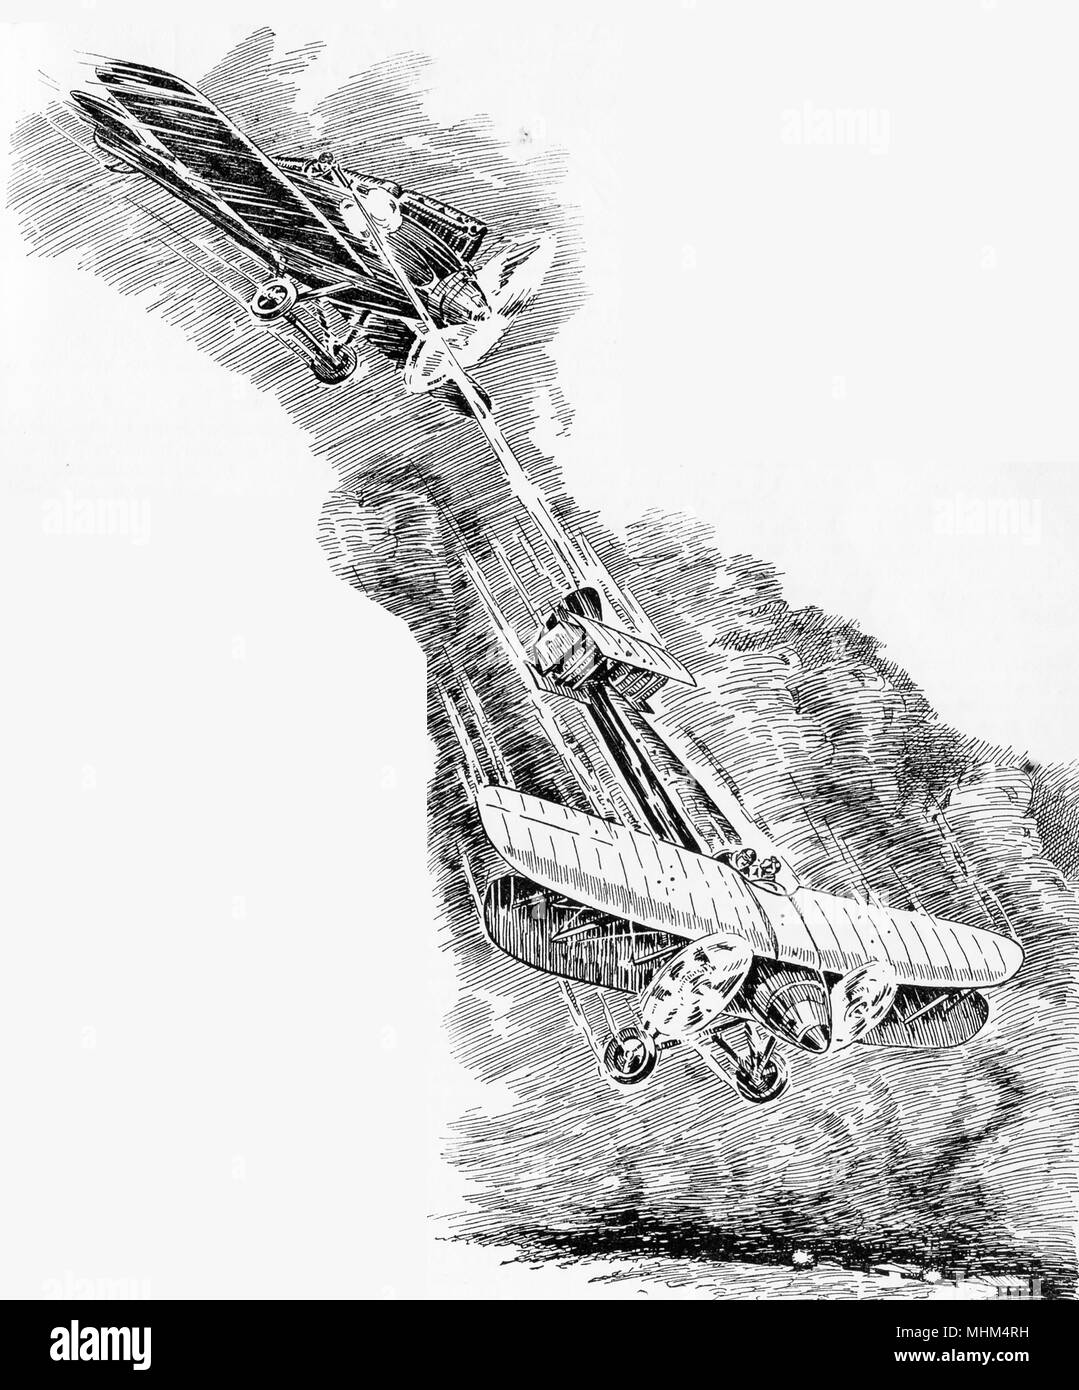 1930 image d'un biplan britannique ne soit abattu par un avion ennemi Banque D'Images